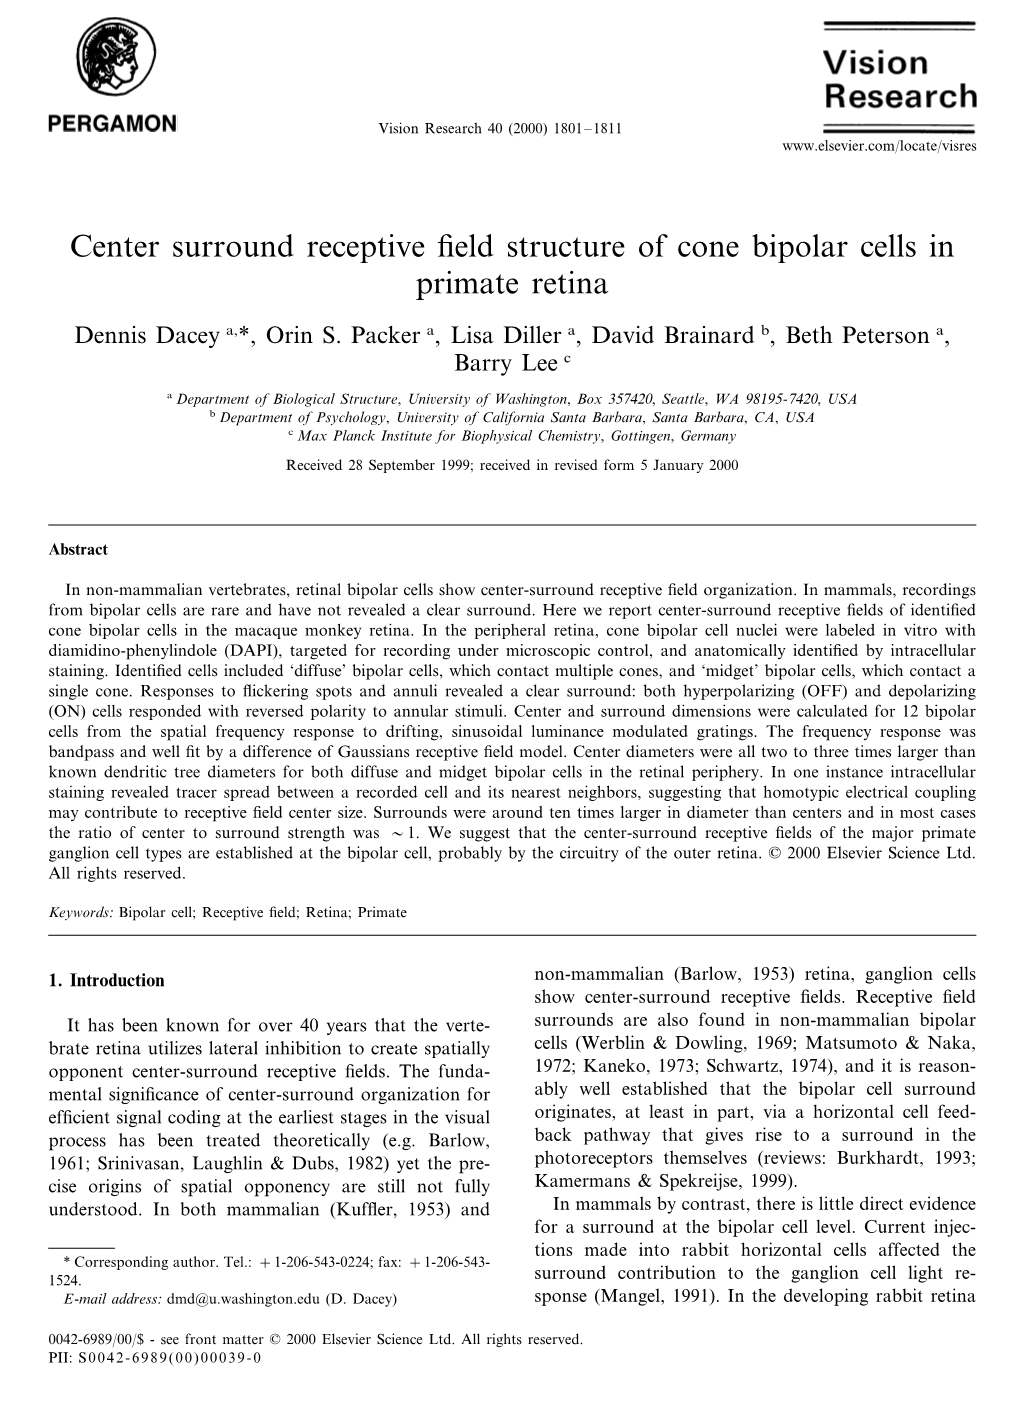 Center Surround Receptive Field Structure of Cone Bipolar Cells in Primate Retina